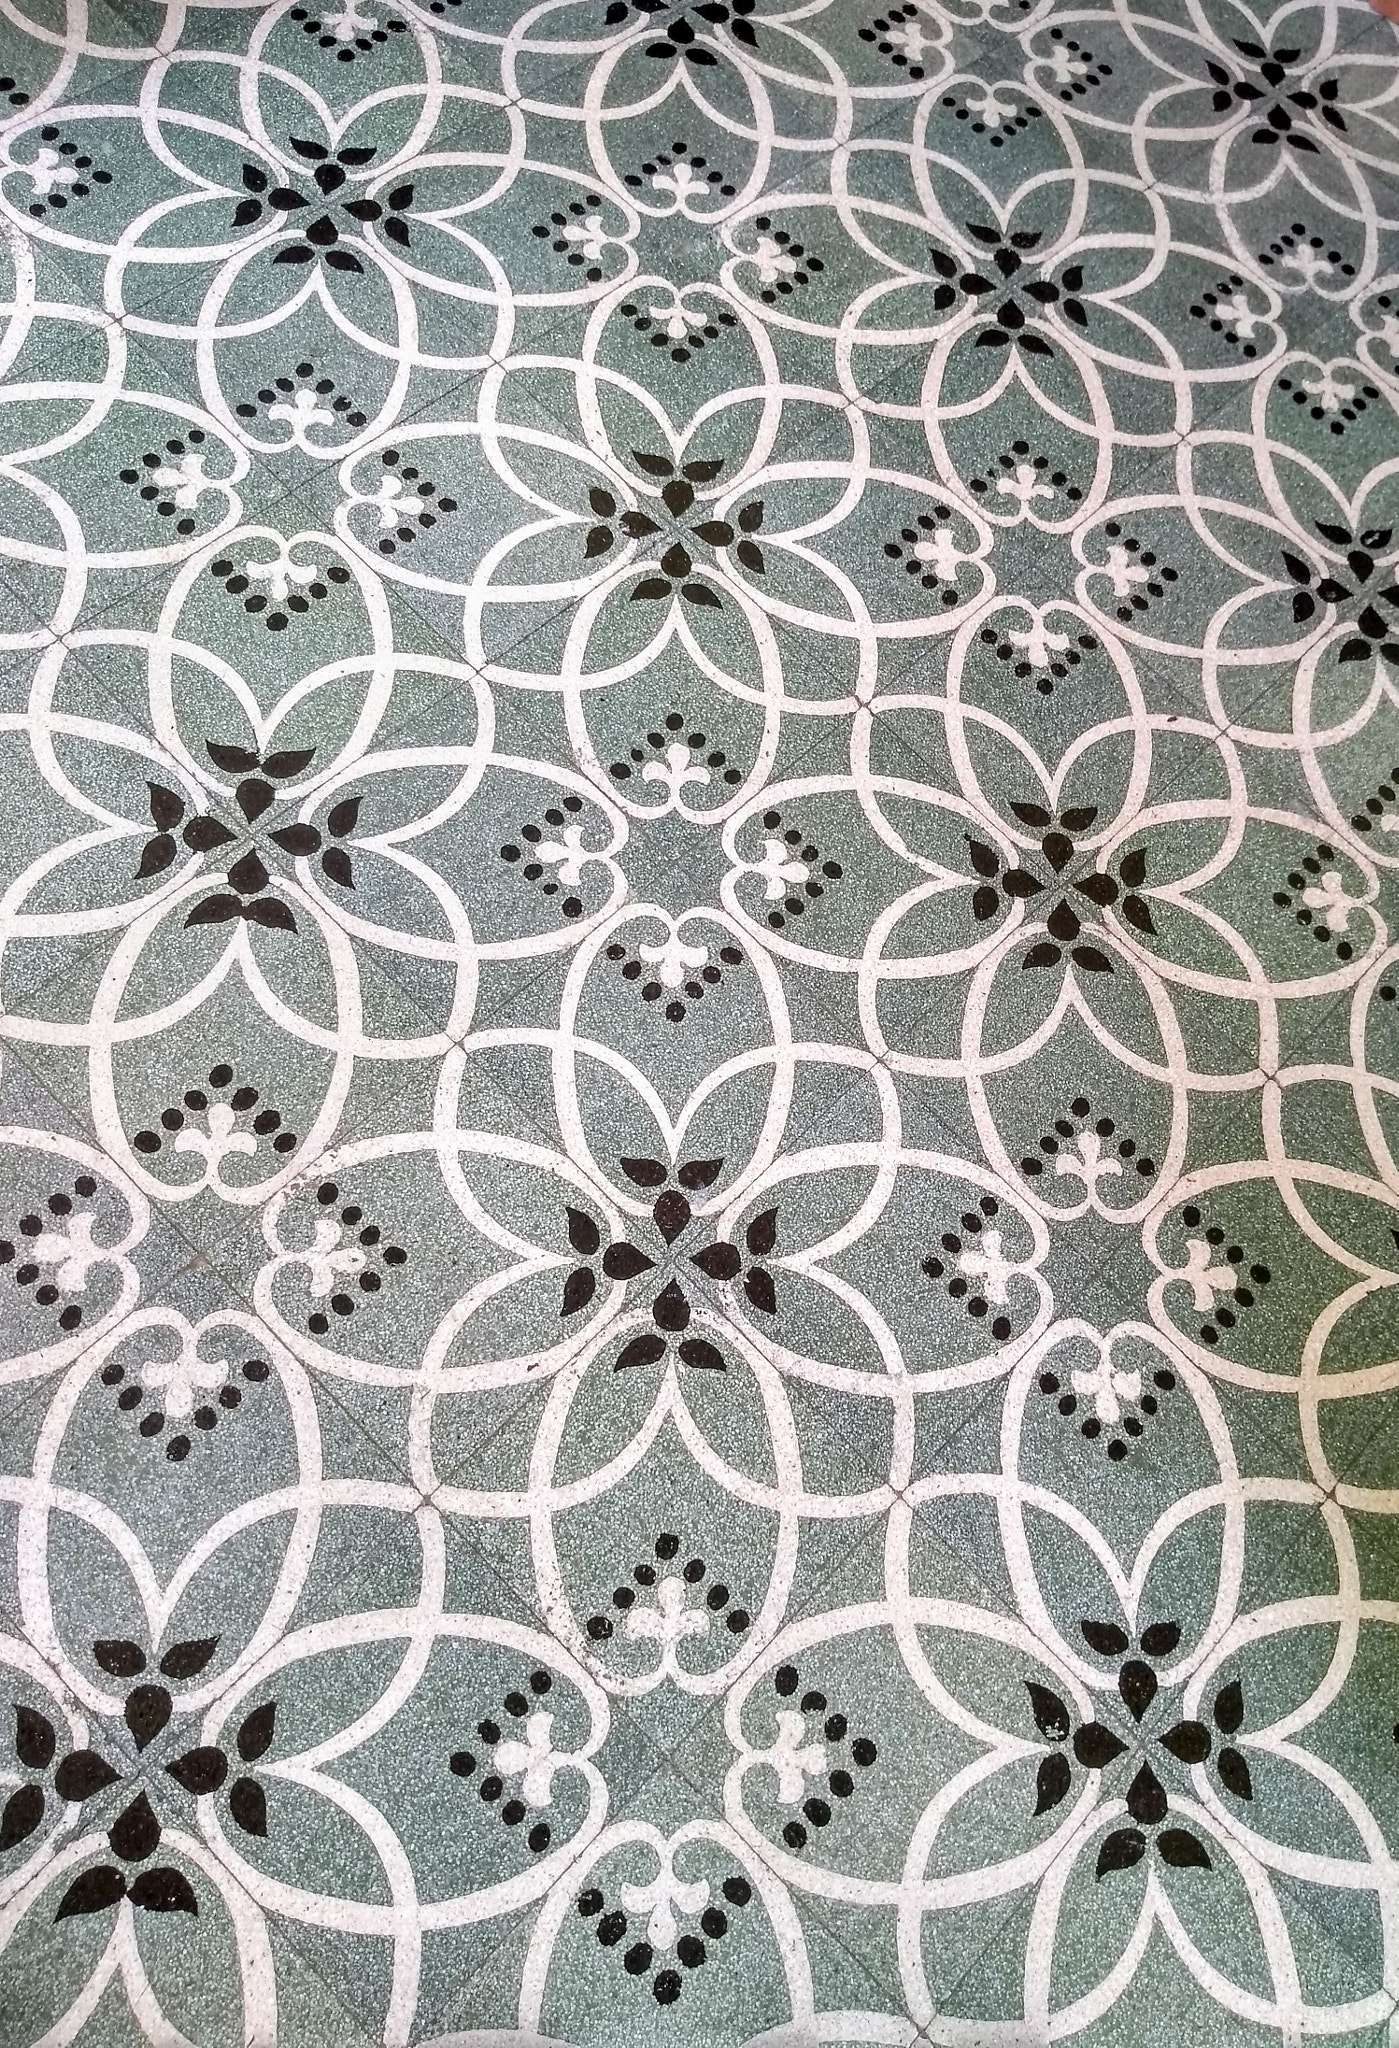 Motorola Moto G (5S) sample photo. Floor pattern photography